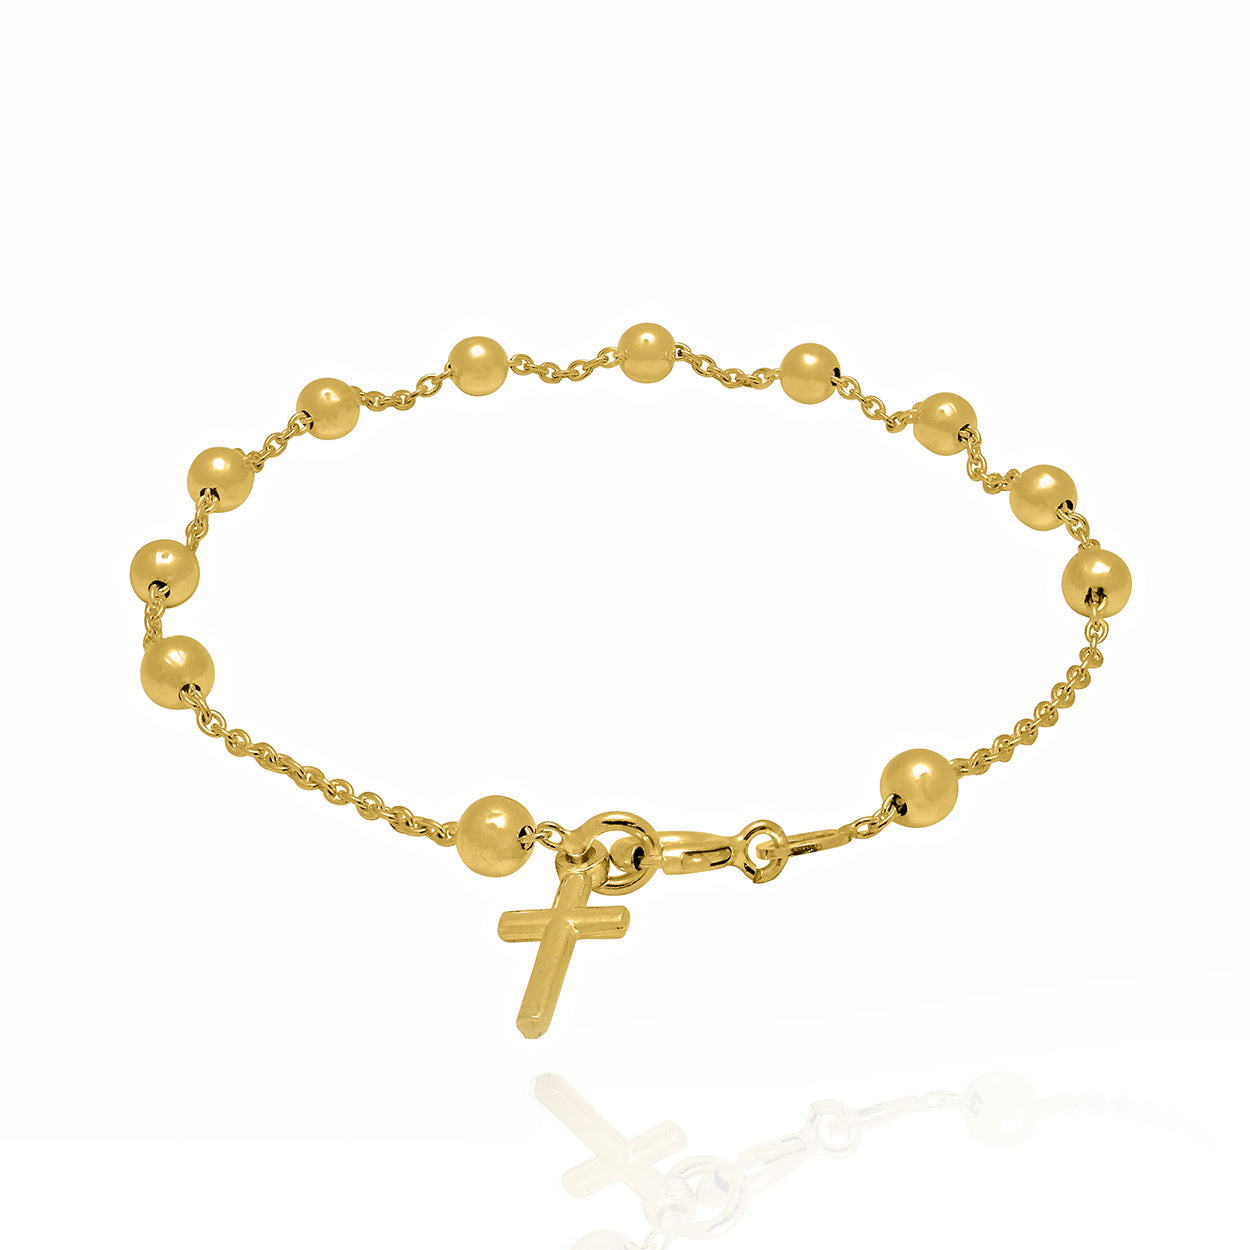 Rosary Bracelet at Best Price in India